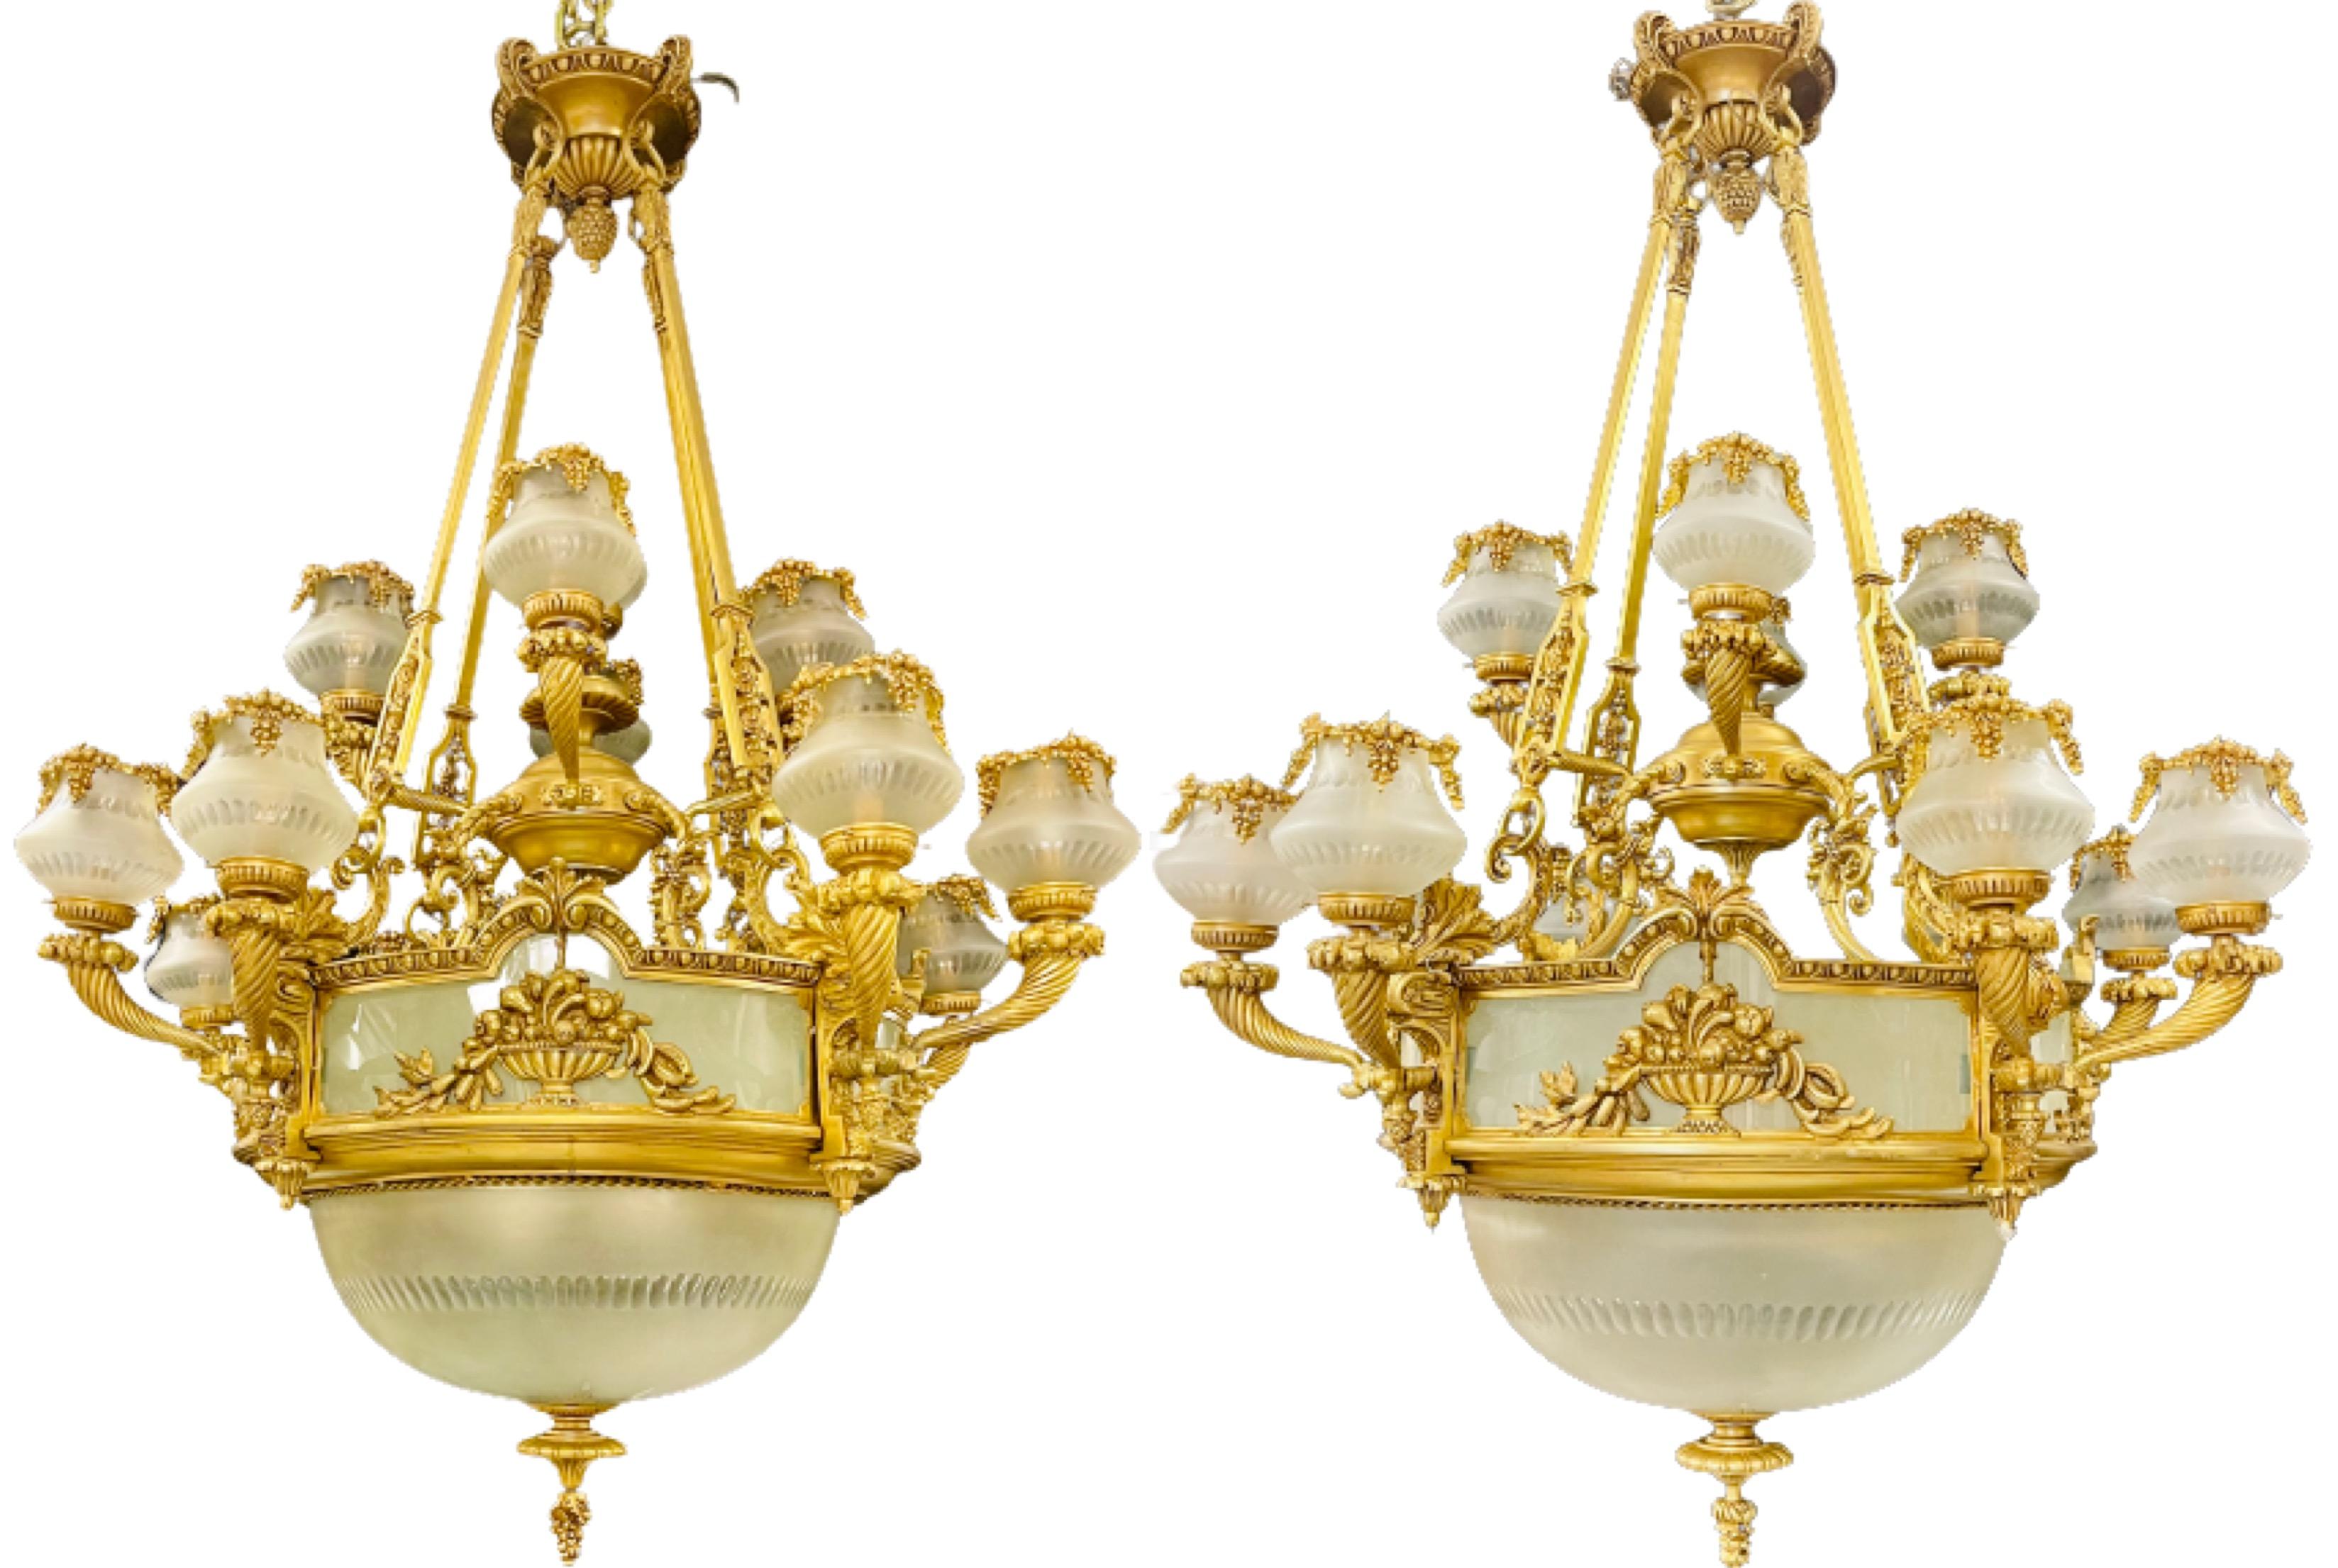 Zwei Kronleuchter aus Bronze im Stil Louis XVI. Eine große und beeindruckende palastartigen Paar vergoldeter Bronze Kronleuchter mit 13 beleuchteten Armen mit vier Glühbirnen auf der Innenseite der großen Milchglasschale. Dieser fein gegossene